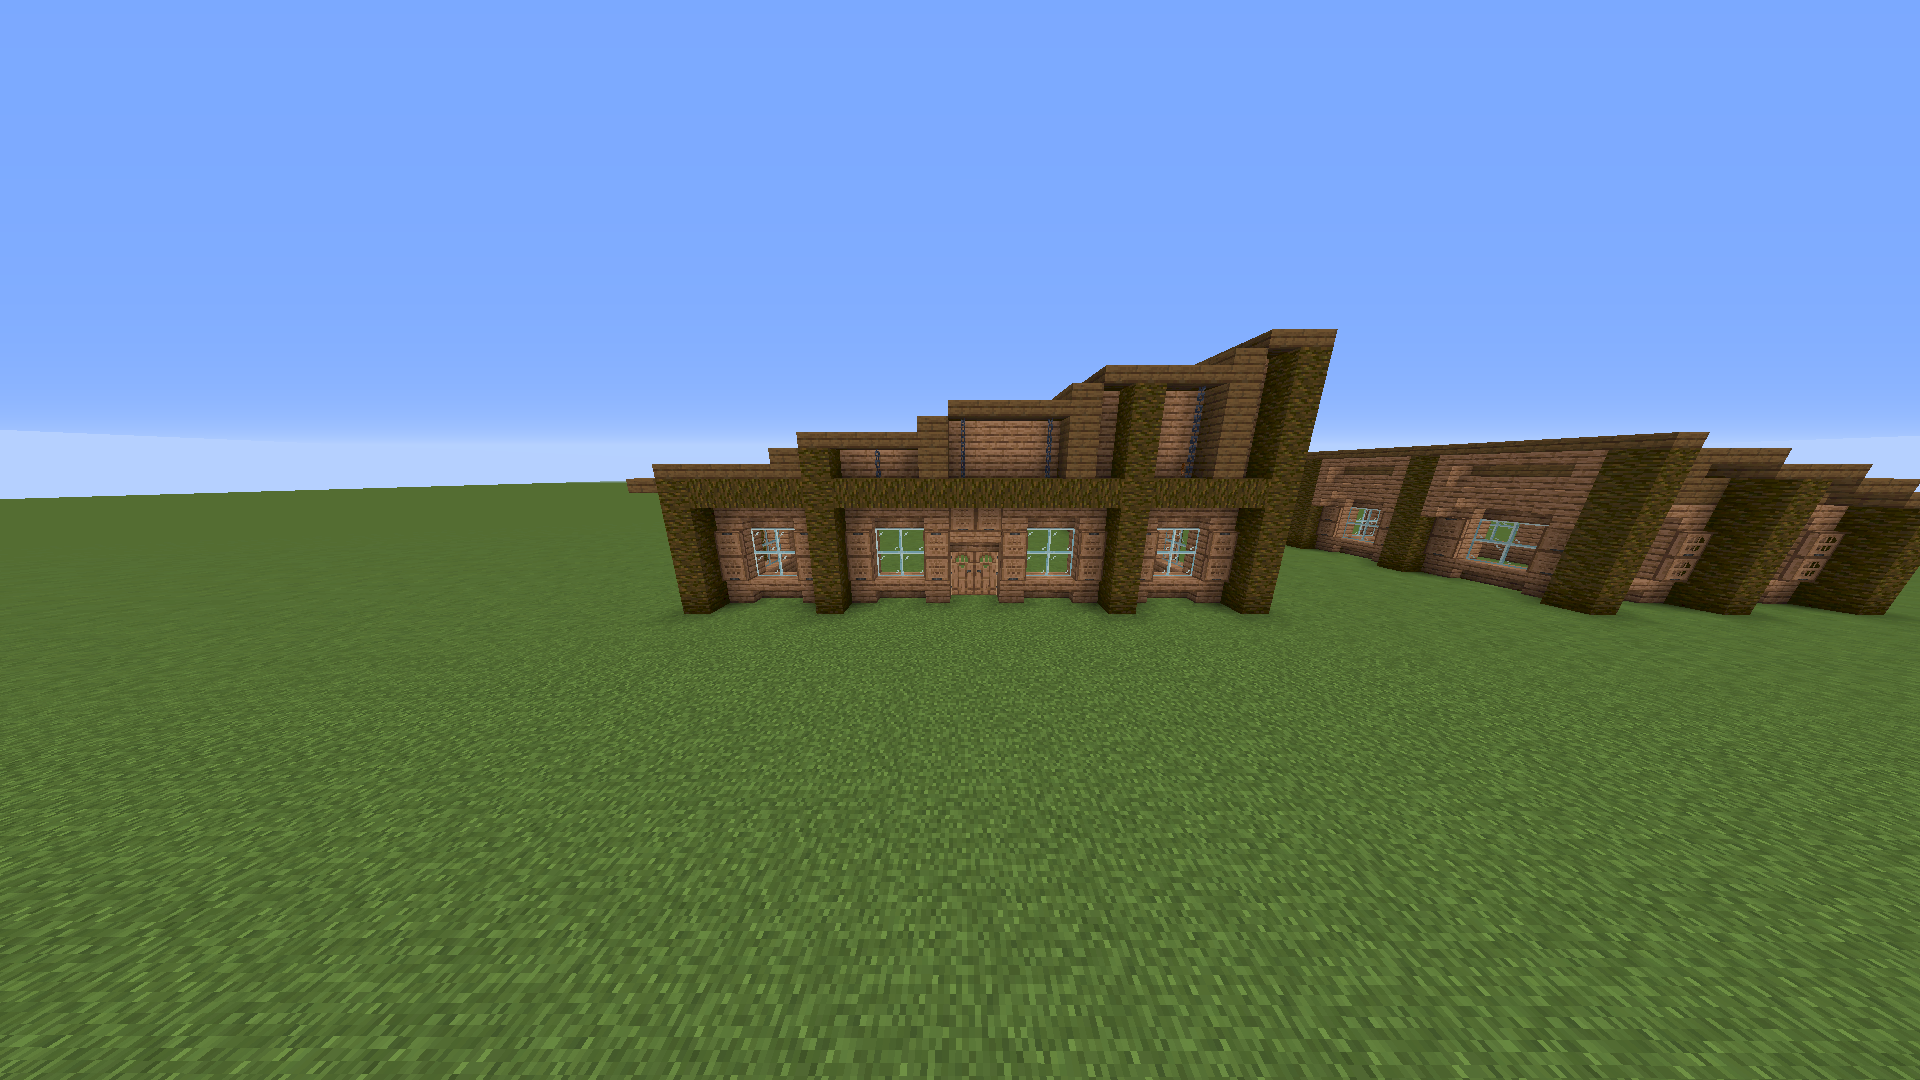 How do you like my Minecraft house